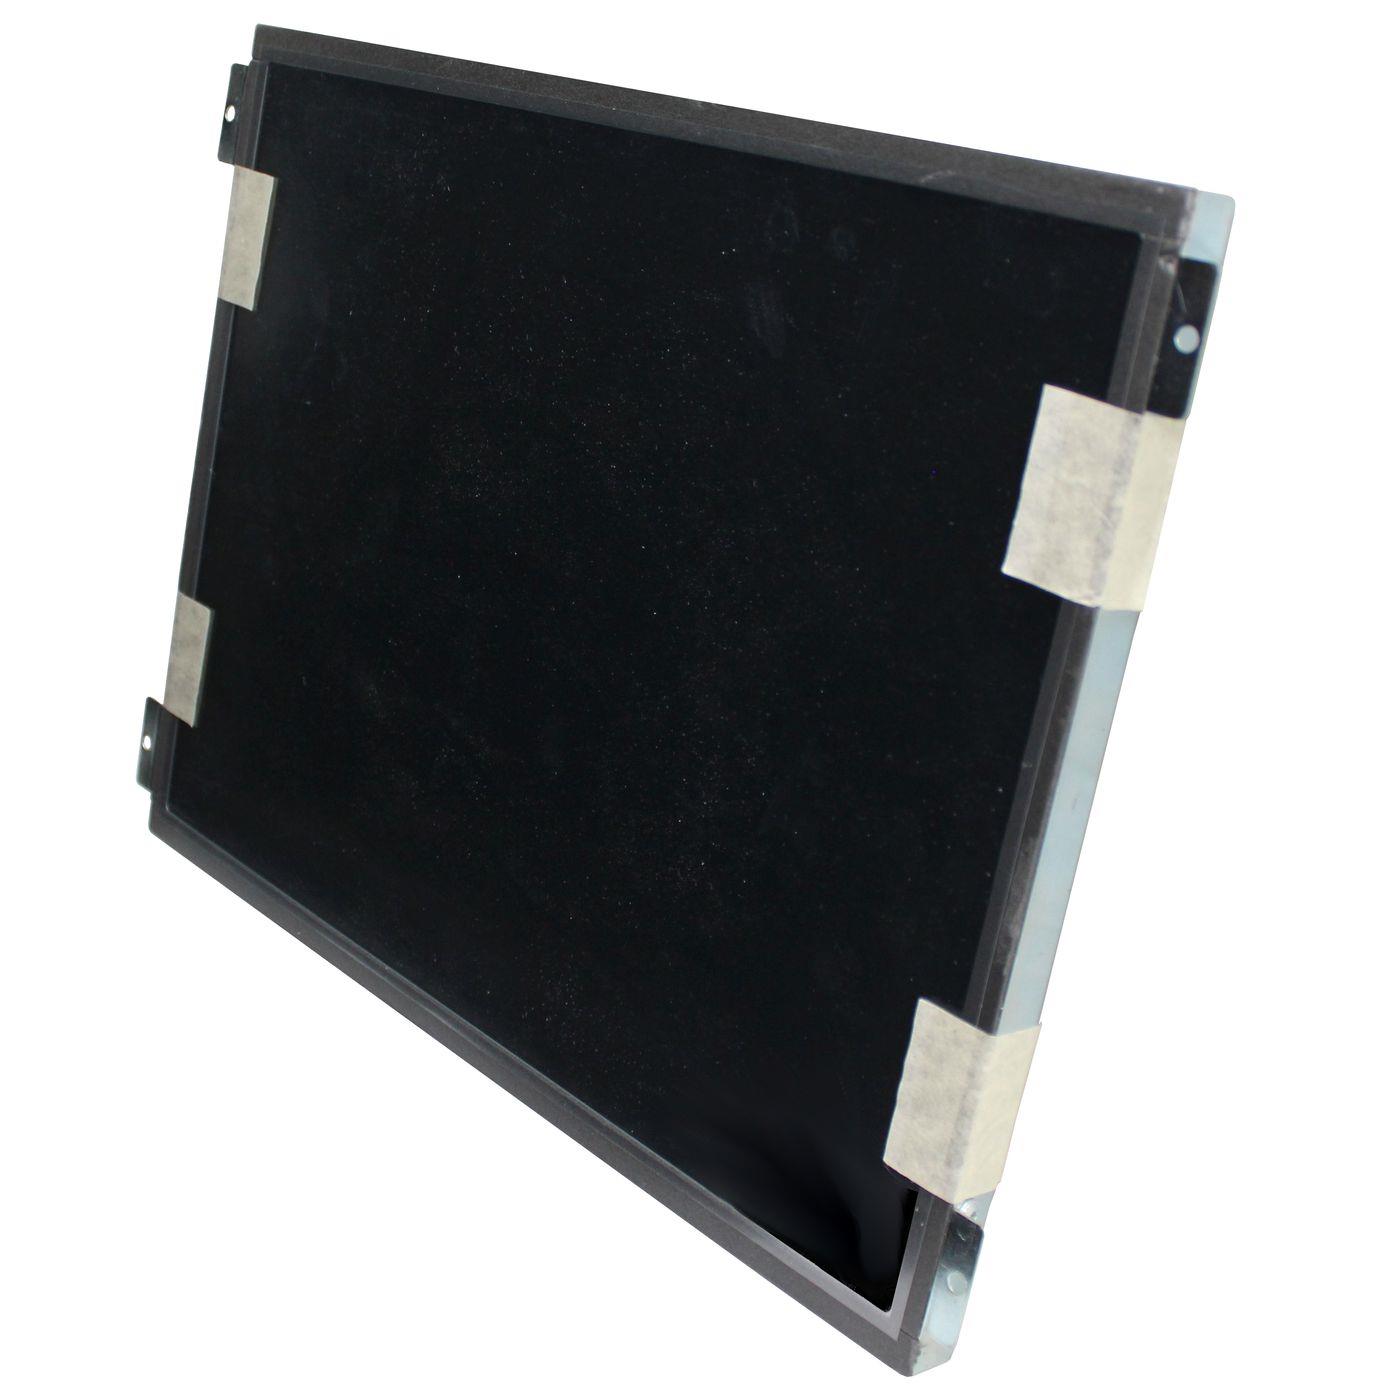 LCD Display BCM Compact Module SCM15X08-R 12V 15V